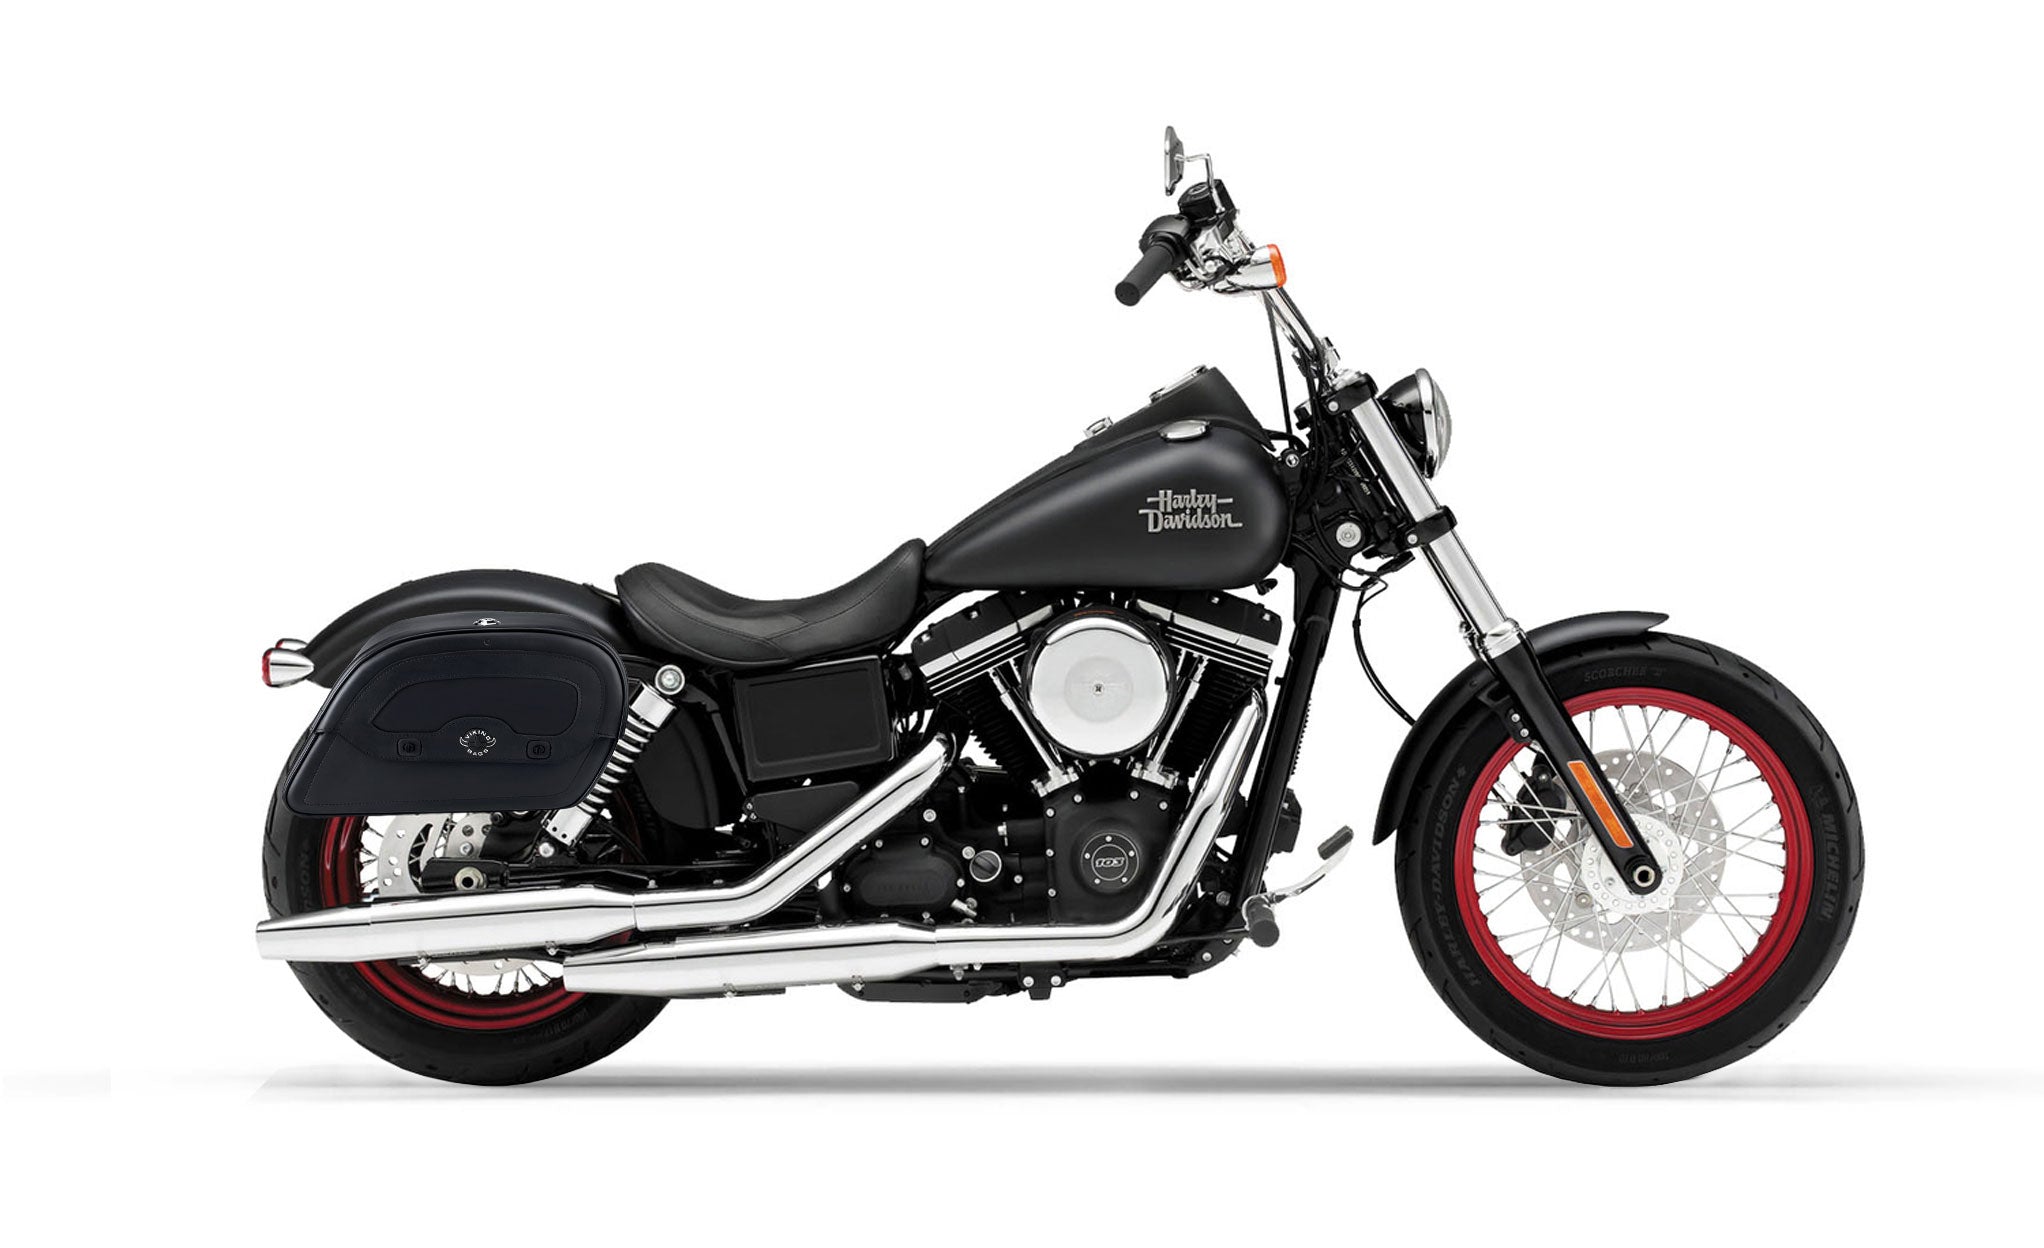 Viking Warrior Medium Leather Motorcycle Saddlebags For Harley Dyna Street Bob Fxdb I on Bike Photo @expand